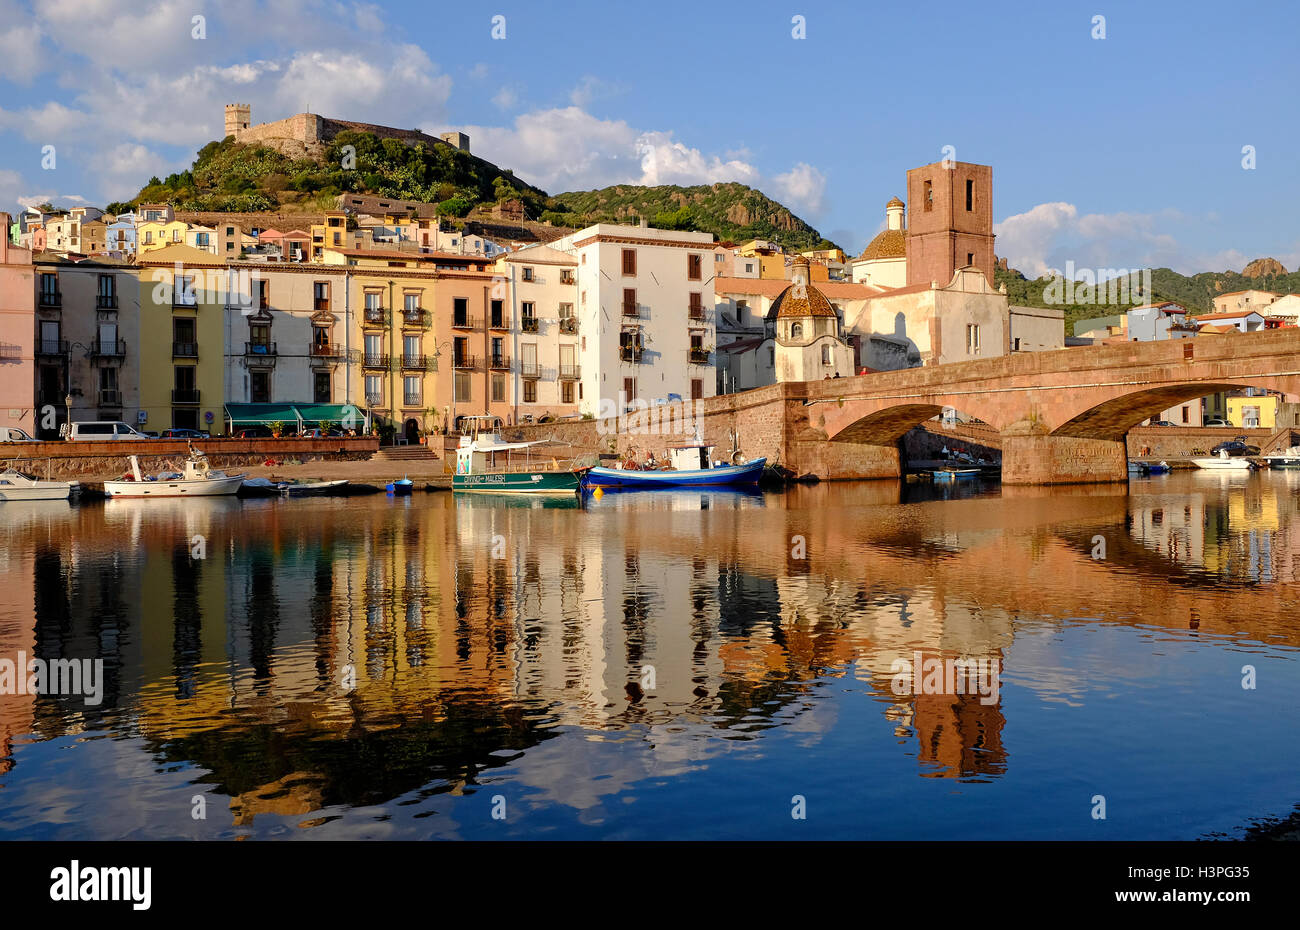 Bosa, Sardinien, Italien Stockfoto